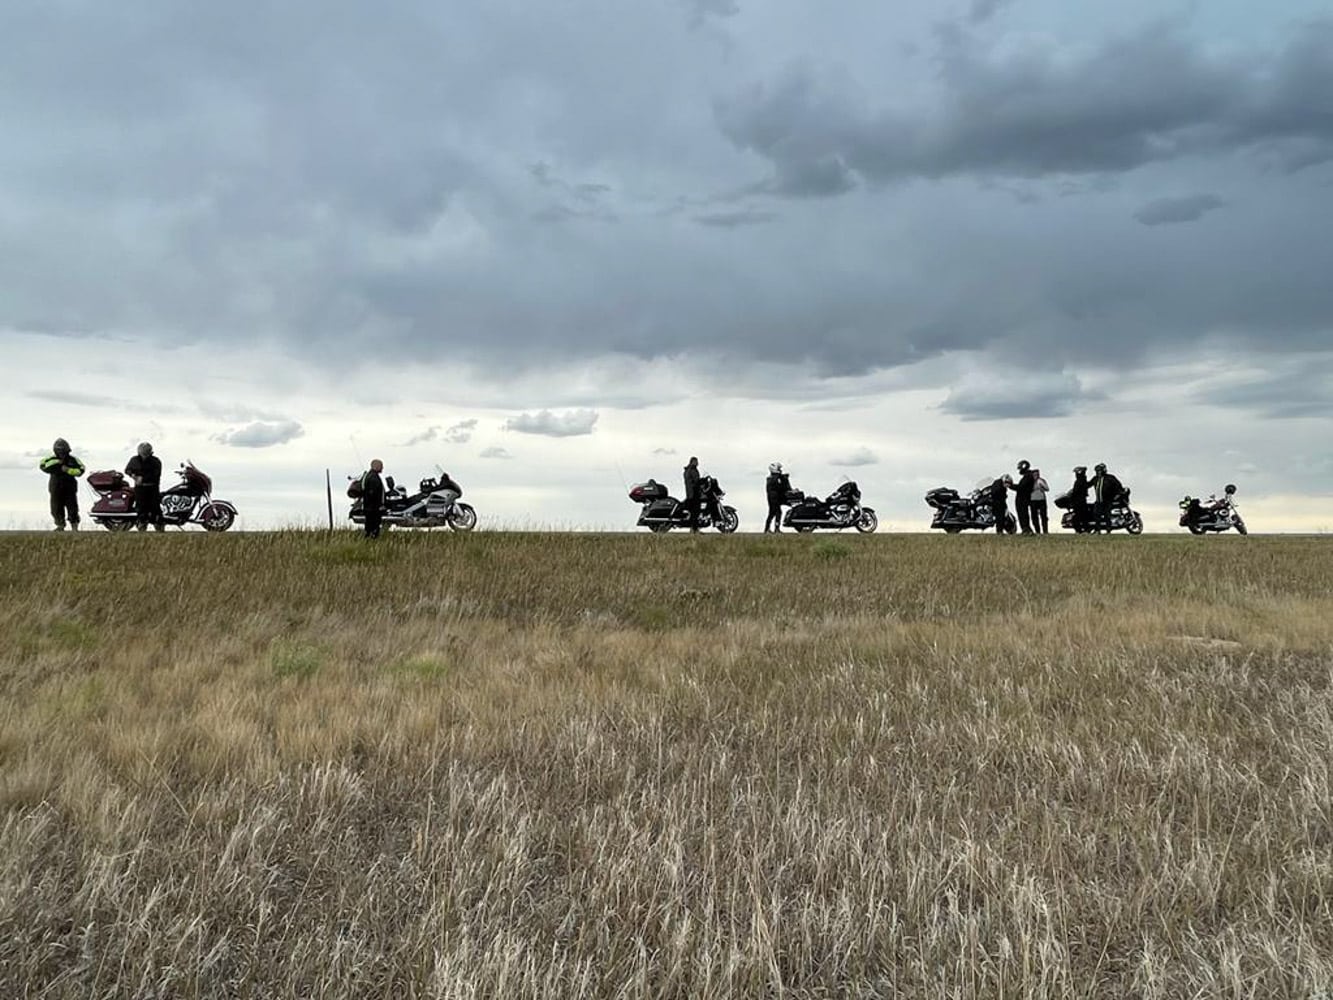 Le Wyoming, ou rouler sur les traces de Buffalo Bill!